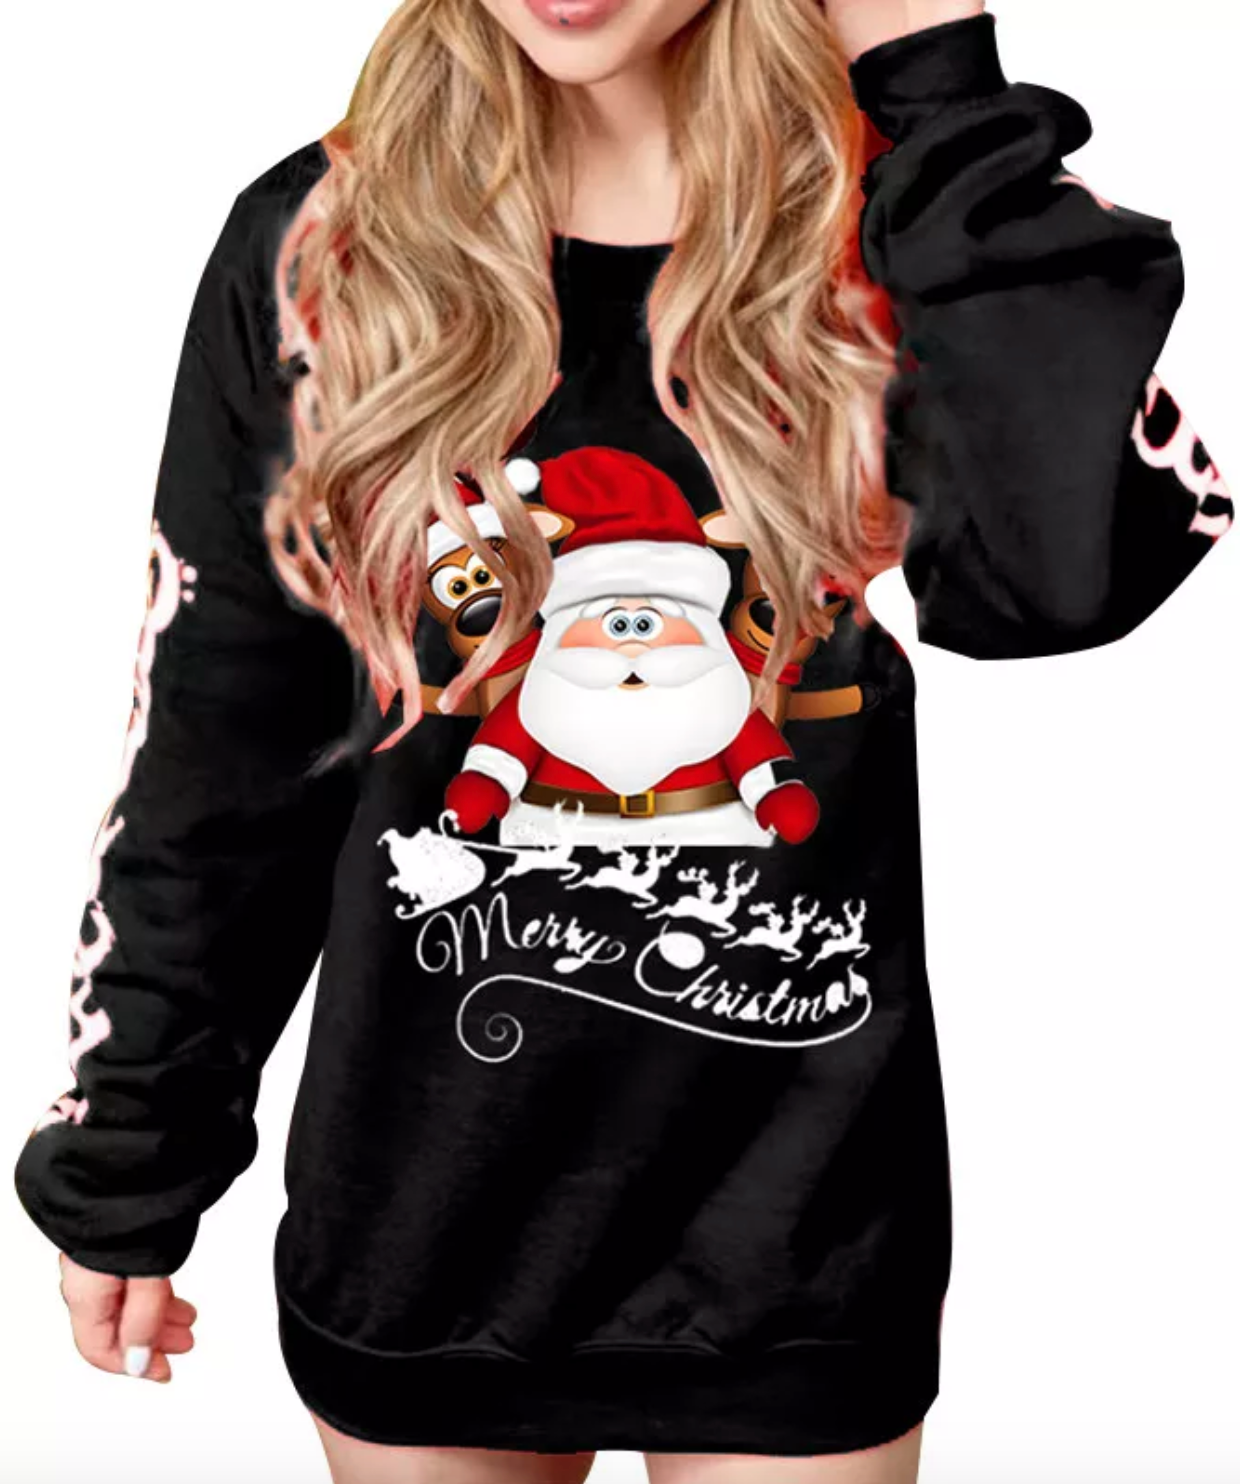 Black Christmas Santa Claus Sweater